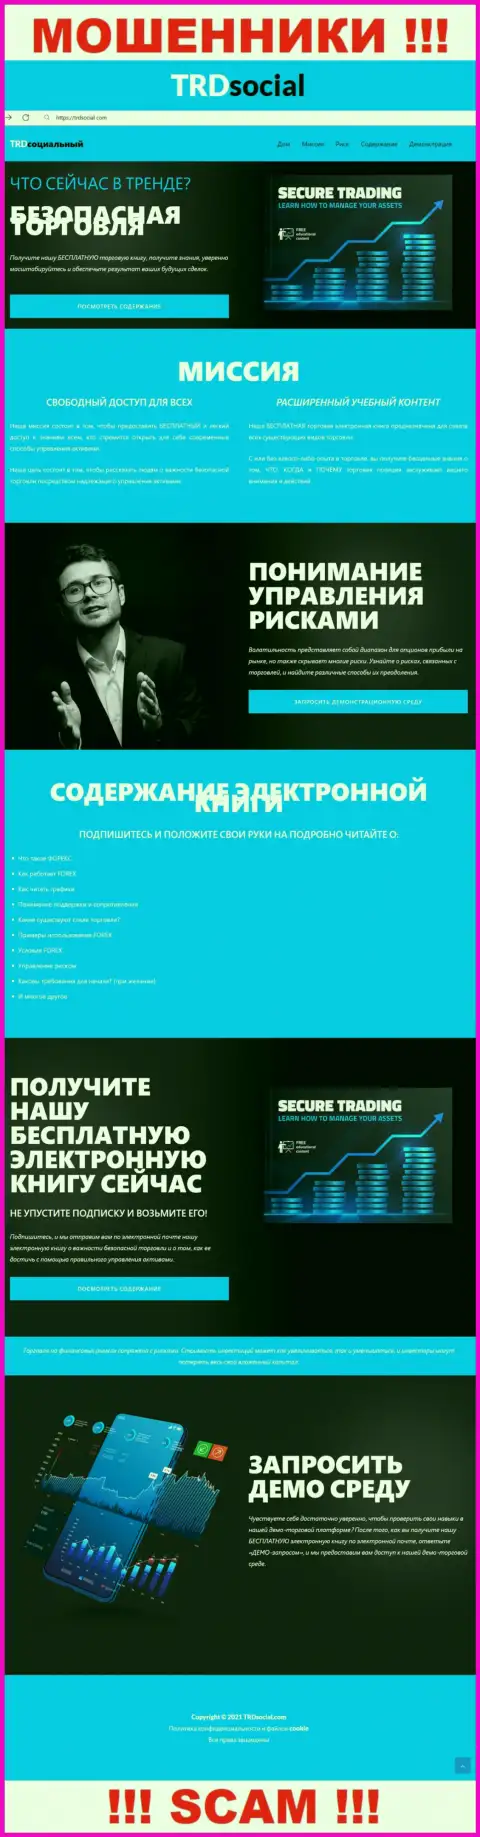 Веб-сервис мошенников ТРДСоциальный Ком - TRDSocial Com капкан для наивных людей